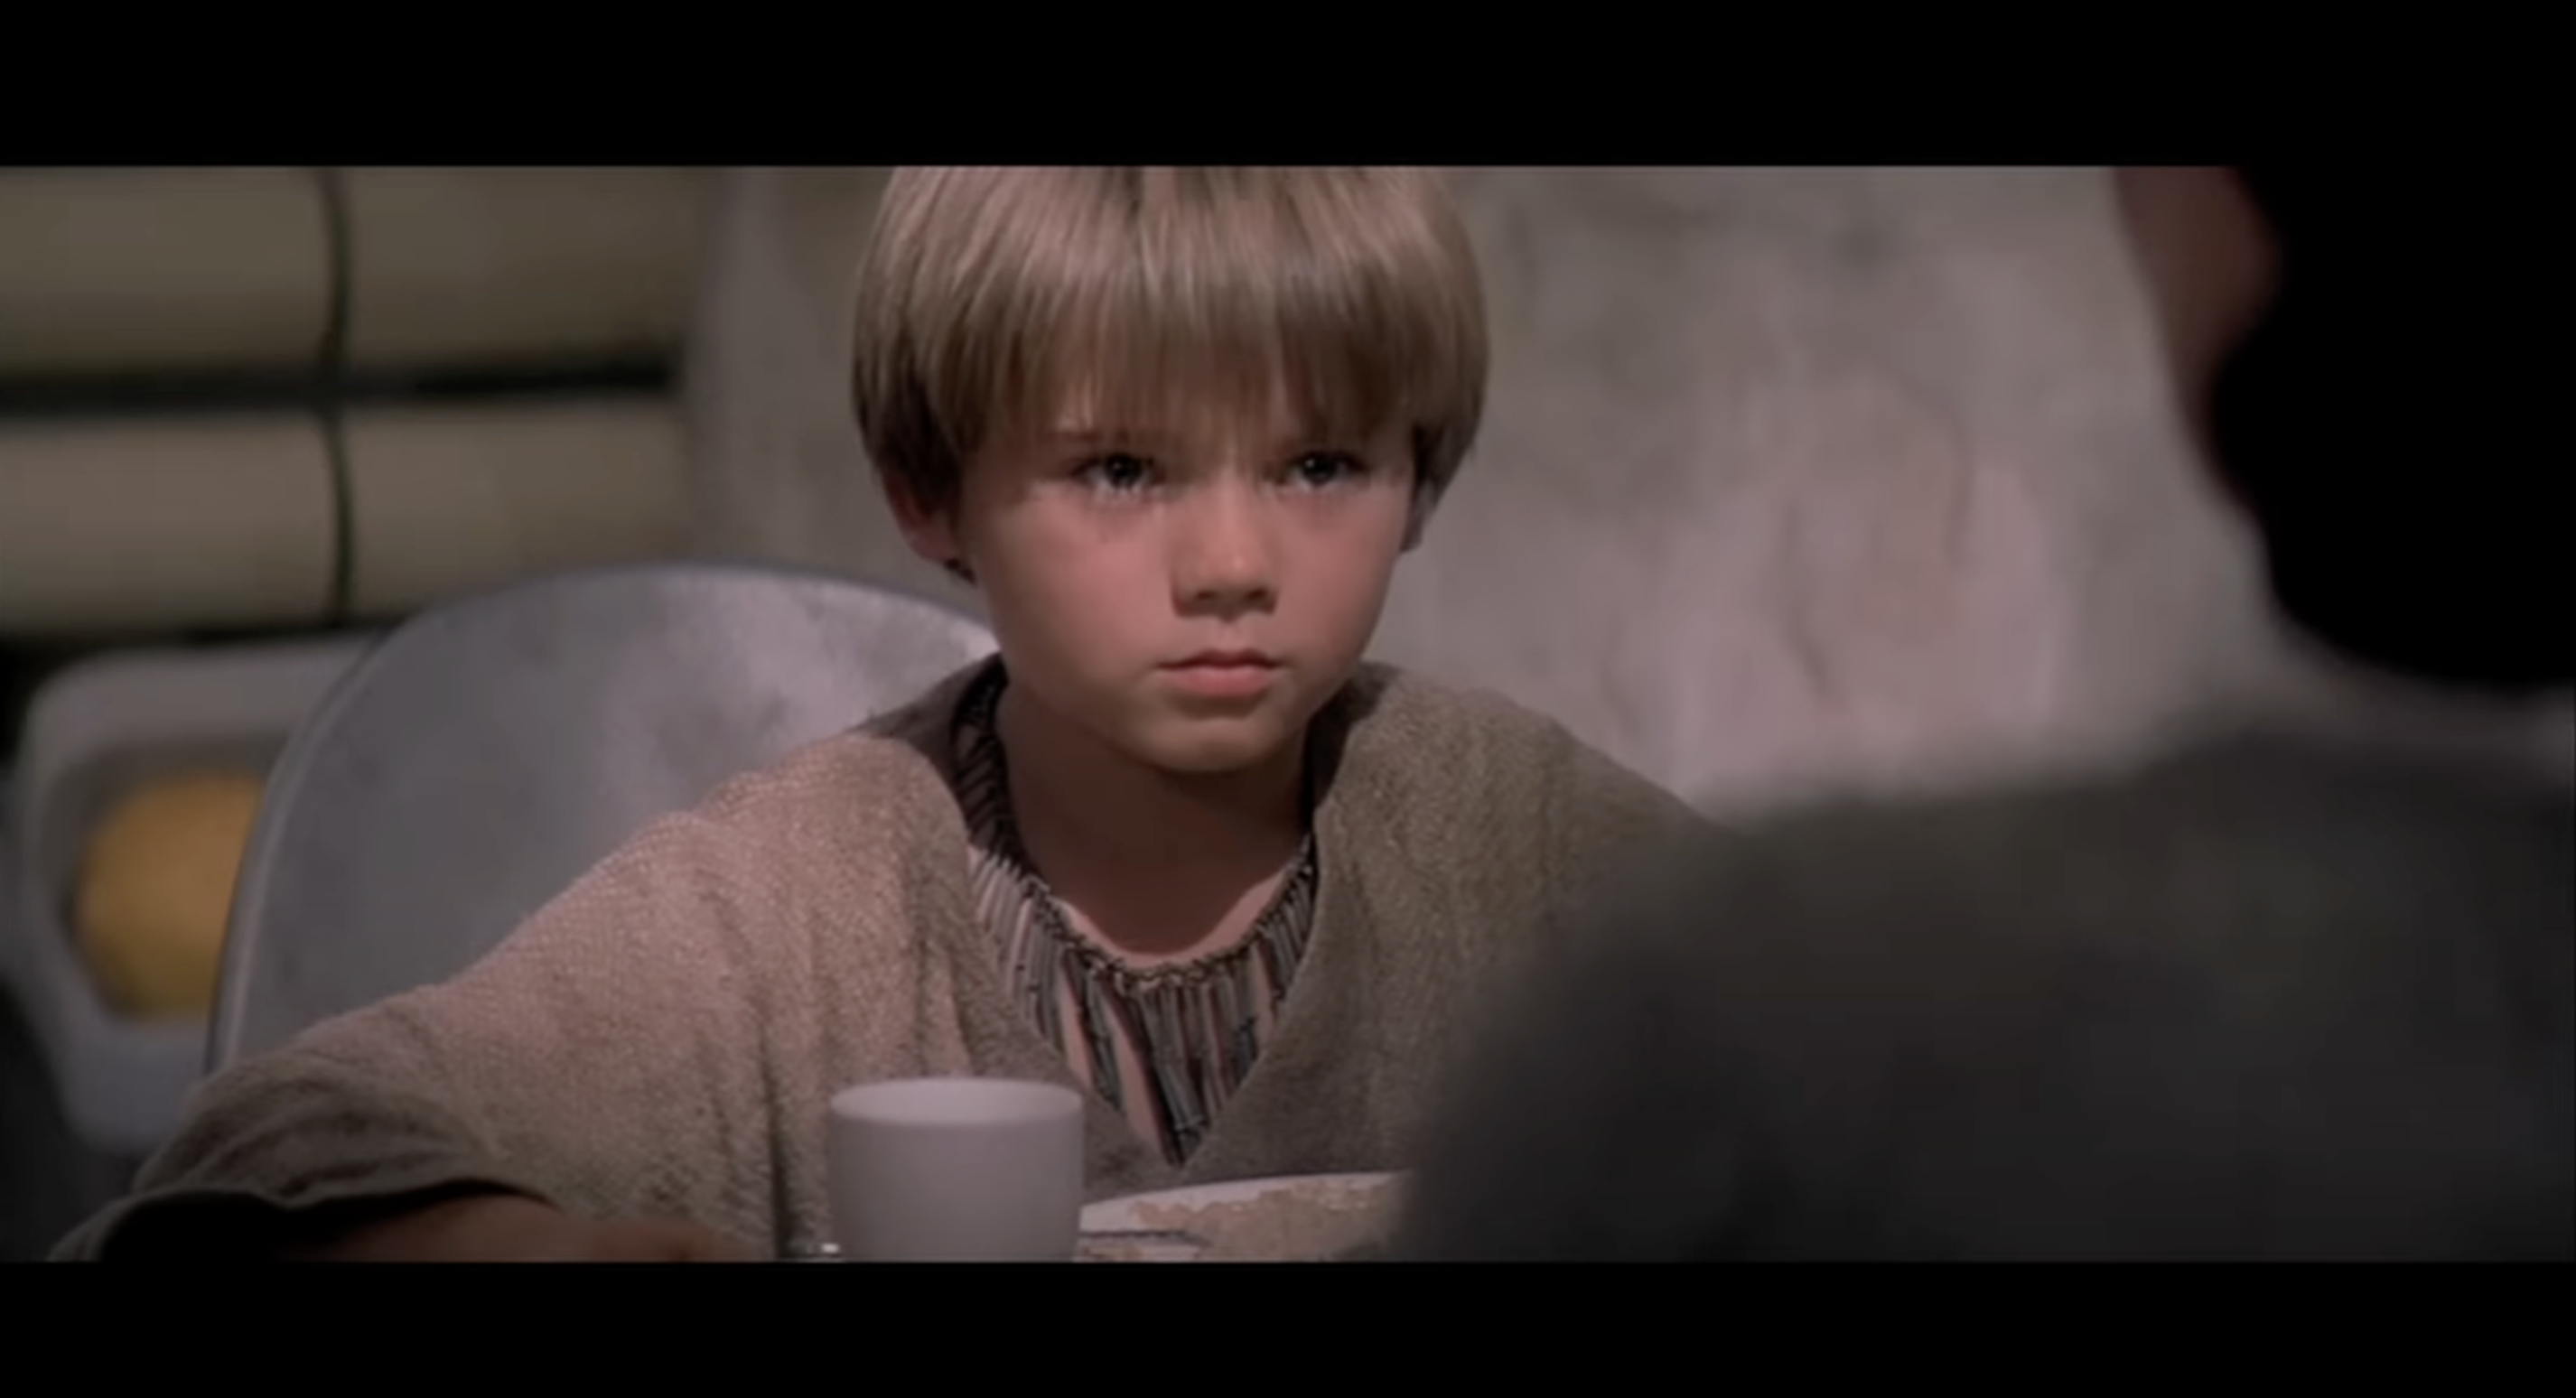 Jake Lloyd dans le rôle du jeune Anakin Skywalker dans "Star Wars Épisode I : La Menace fantôme", tel que vu dans une vidéo postée le 6 juillet 2012 | Source : YouTube/StarWars